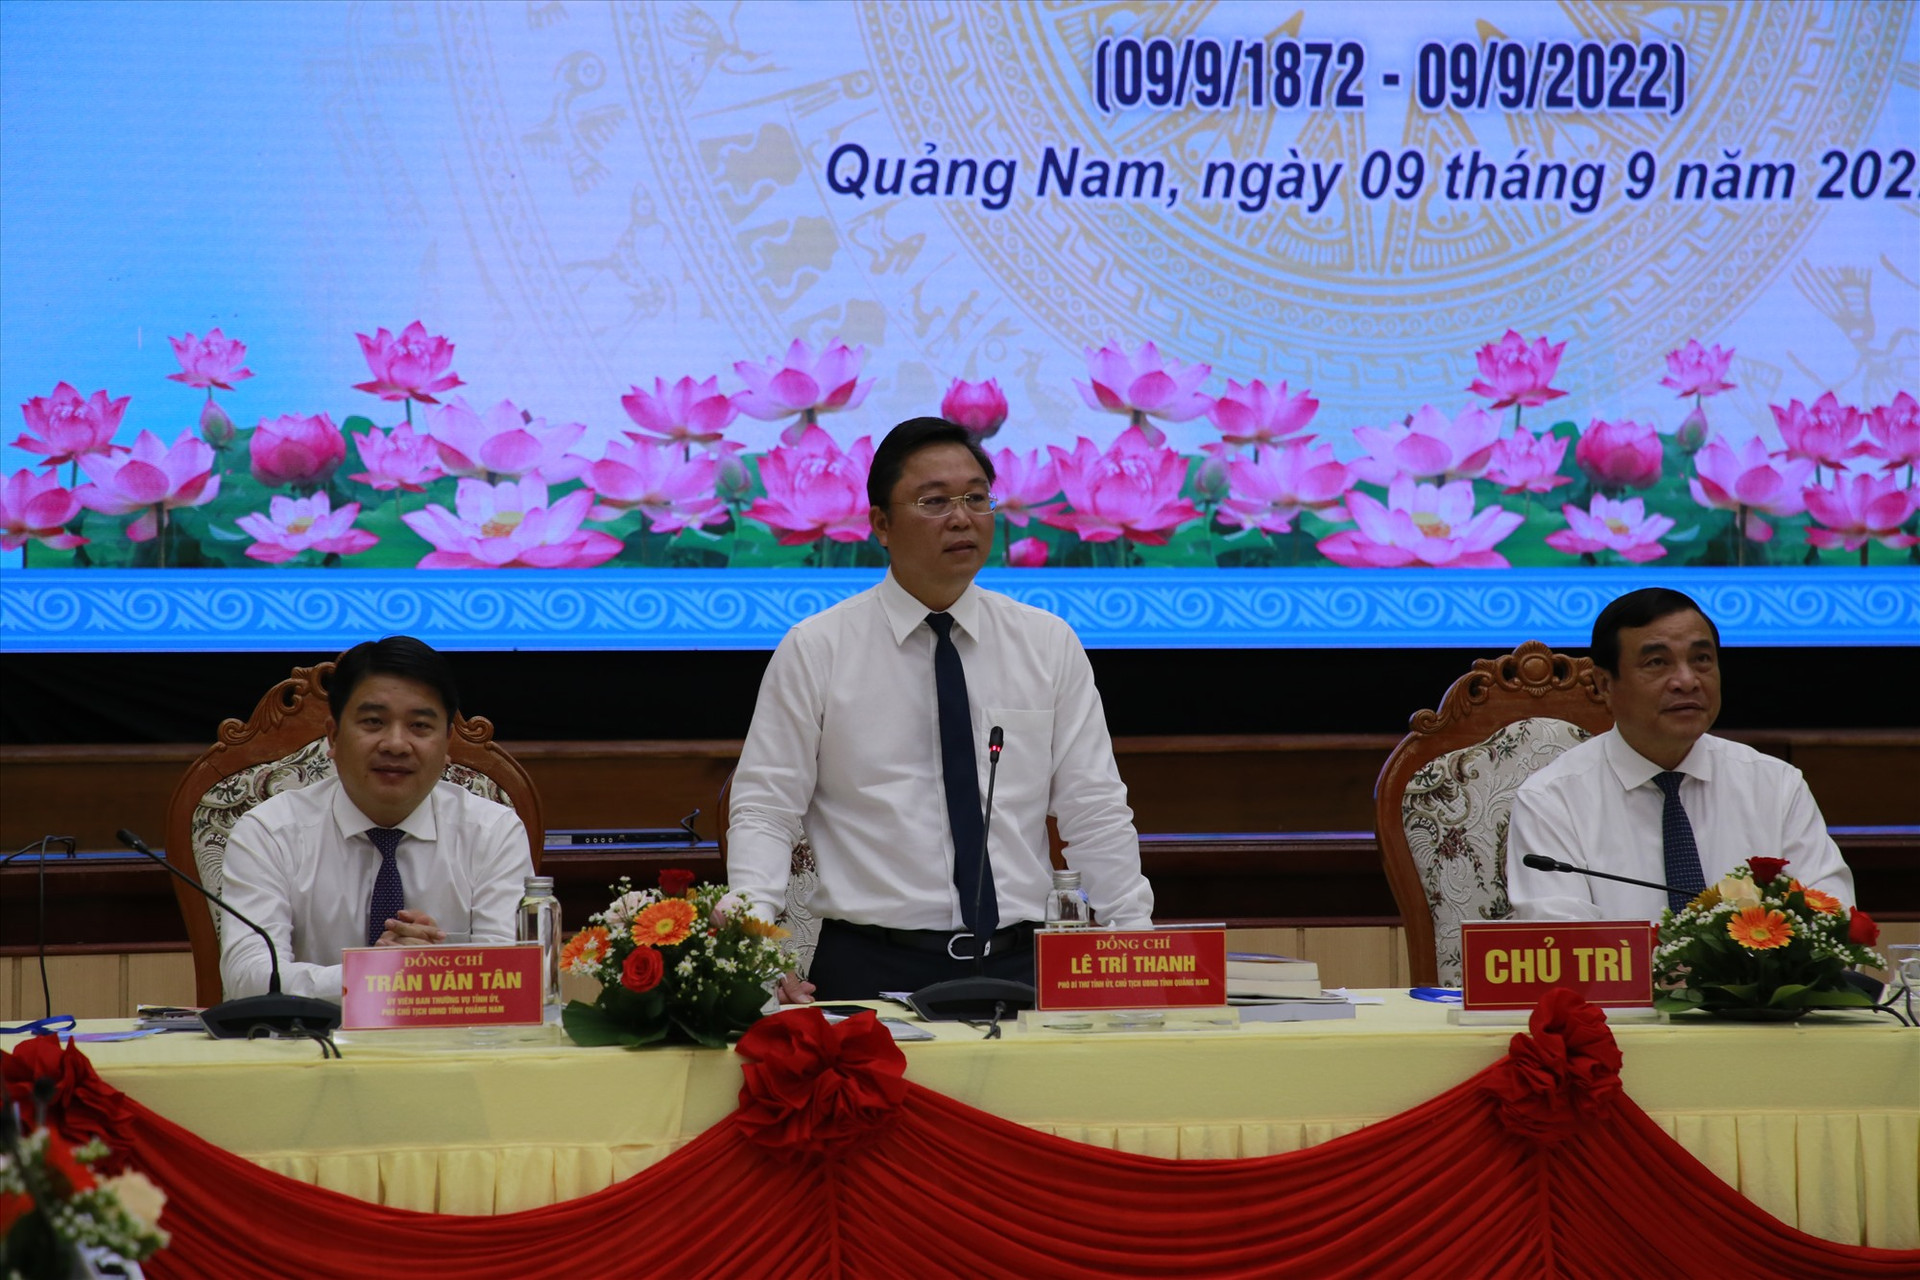 Chủ tịch UBND tỉnh Lê Trí Thanh tiếp thu những ý kiến đóng góp, tham luận của các đại biểu, nhà nghiên cứu. Ảnh: P.V